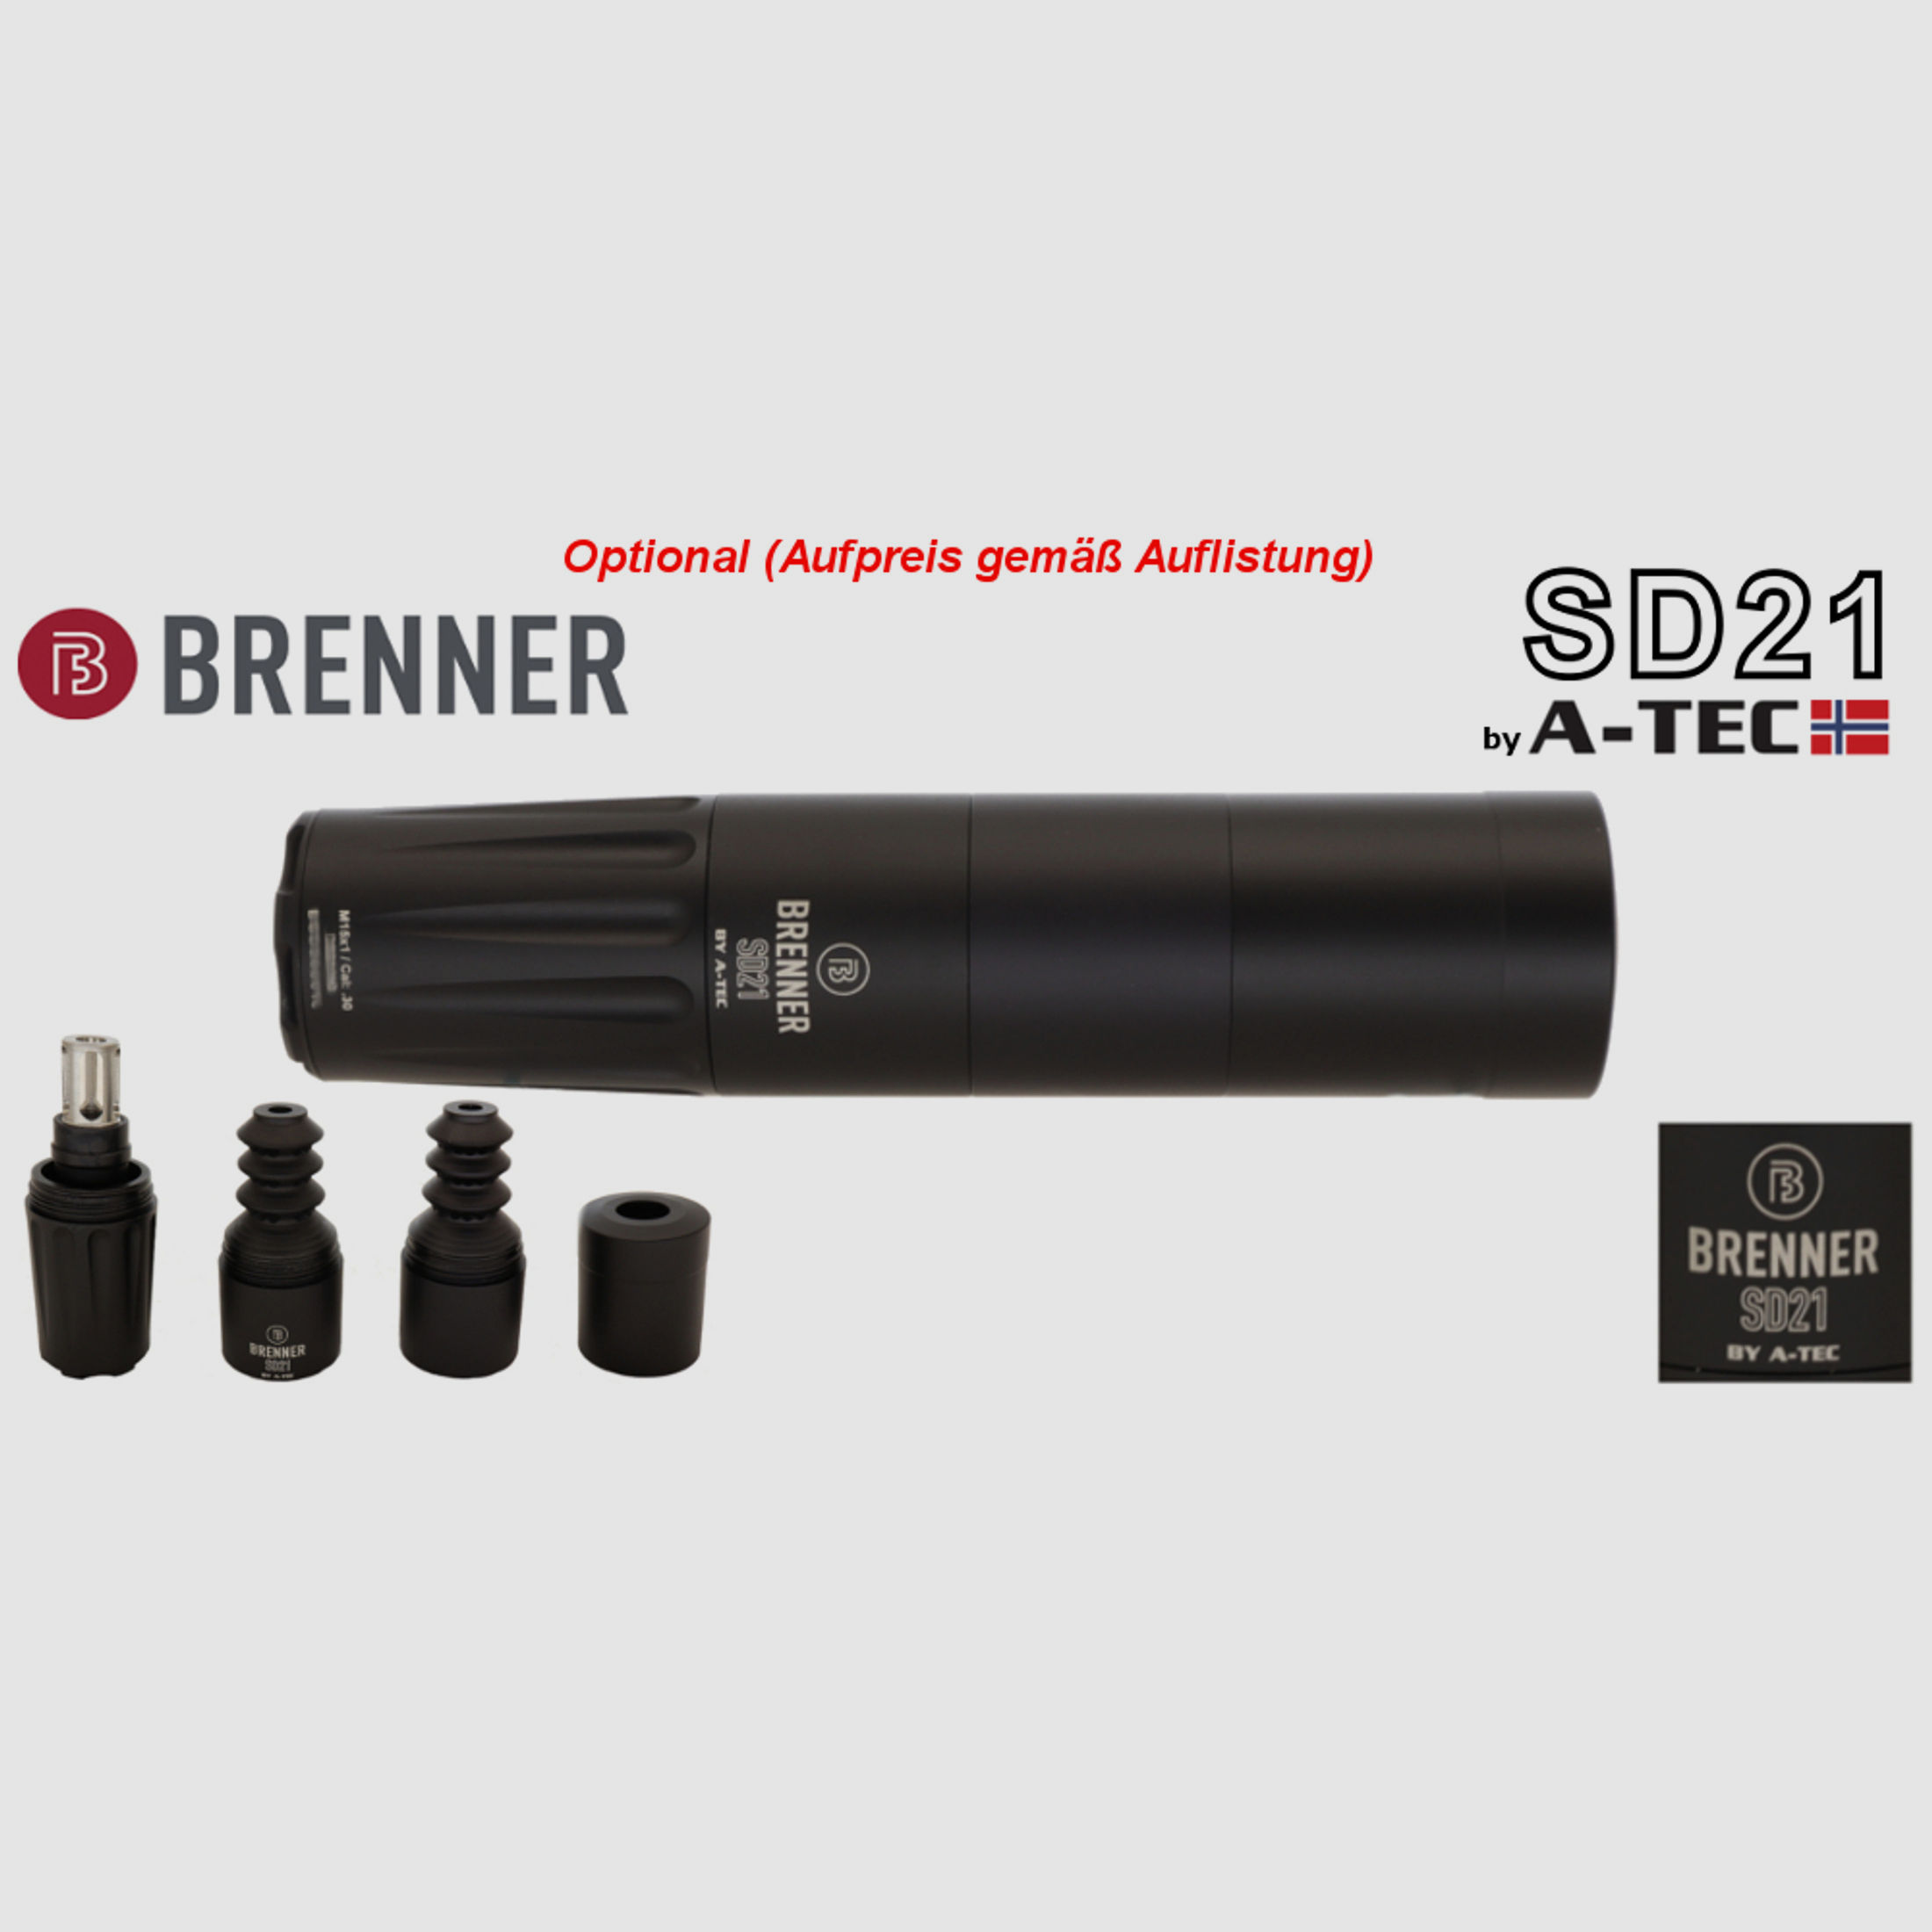 Brenner Komplettpaket: BR20 B&H Prohunter Lochschaft mit LEICA 2.5-15x56 fertig montiert (Art.Nr.: BR20PHP3) Finanzierung möglich